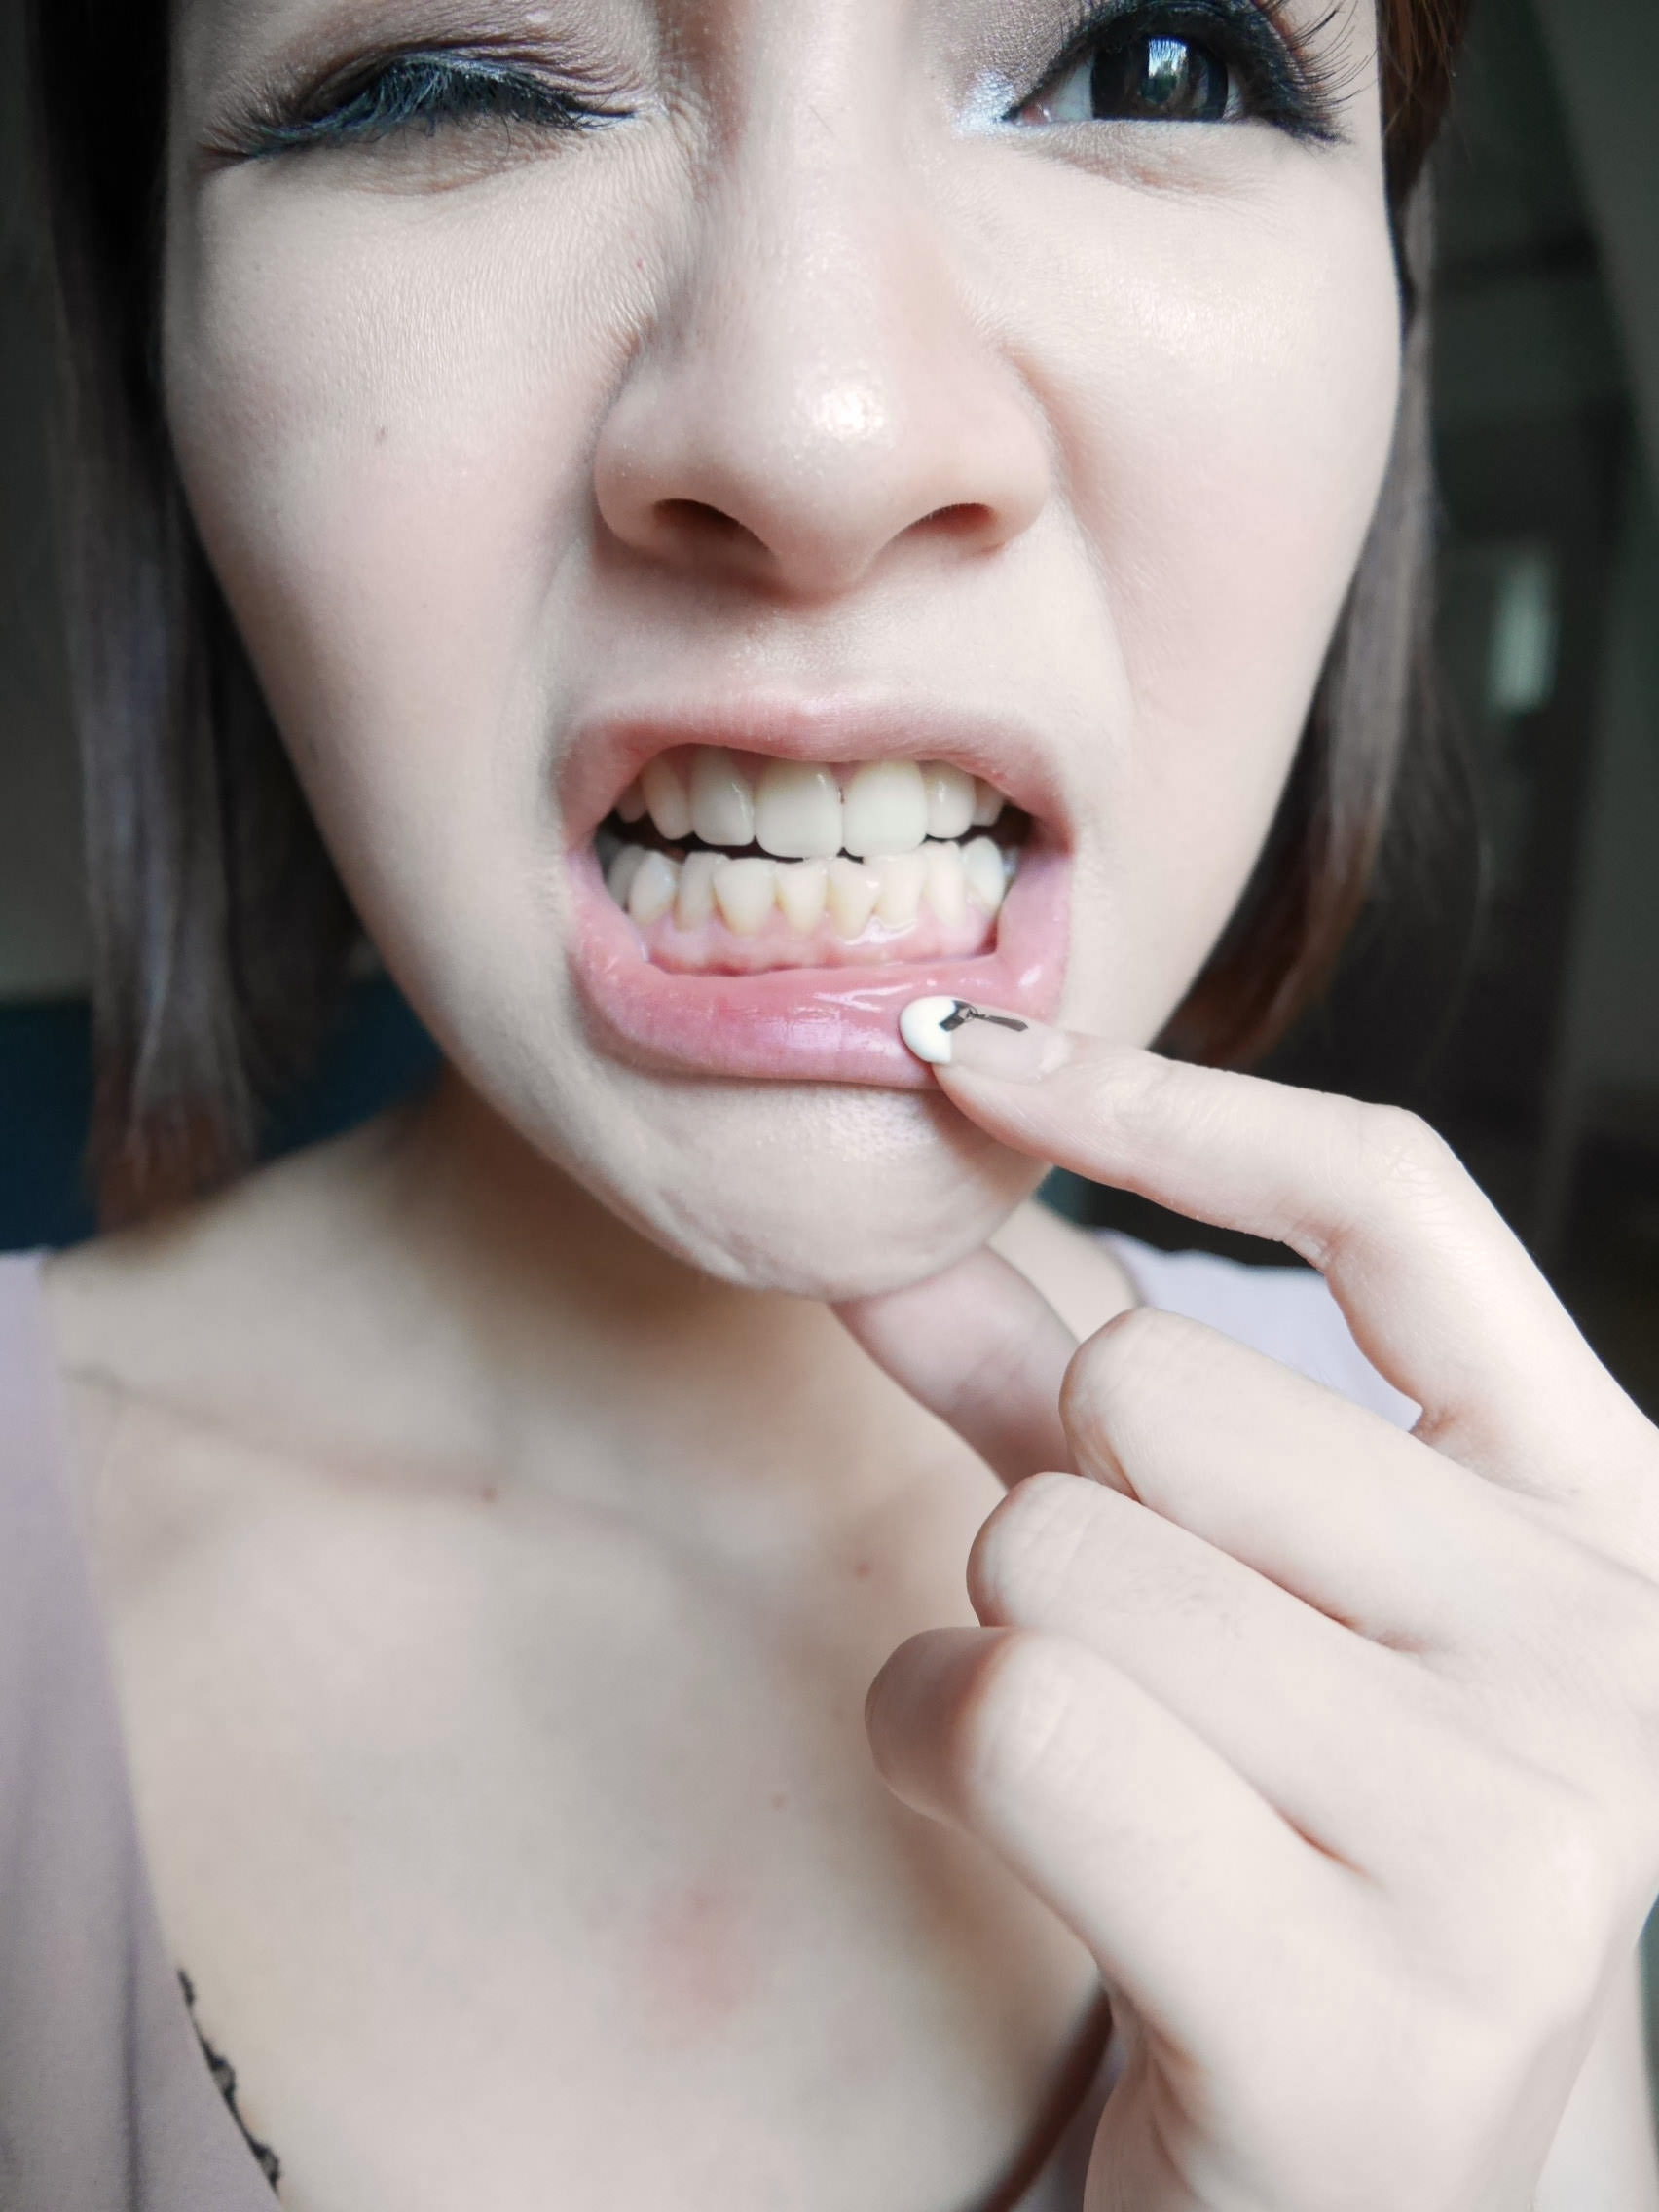 [美齒] 不需大鋼牙,也可以讓牙齒偷偷變漂亮-Invisalign隱適美牙套